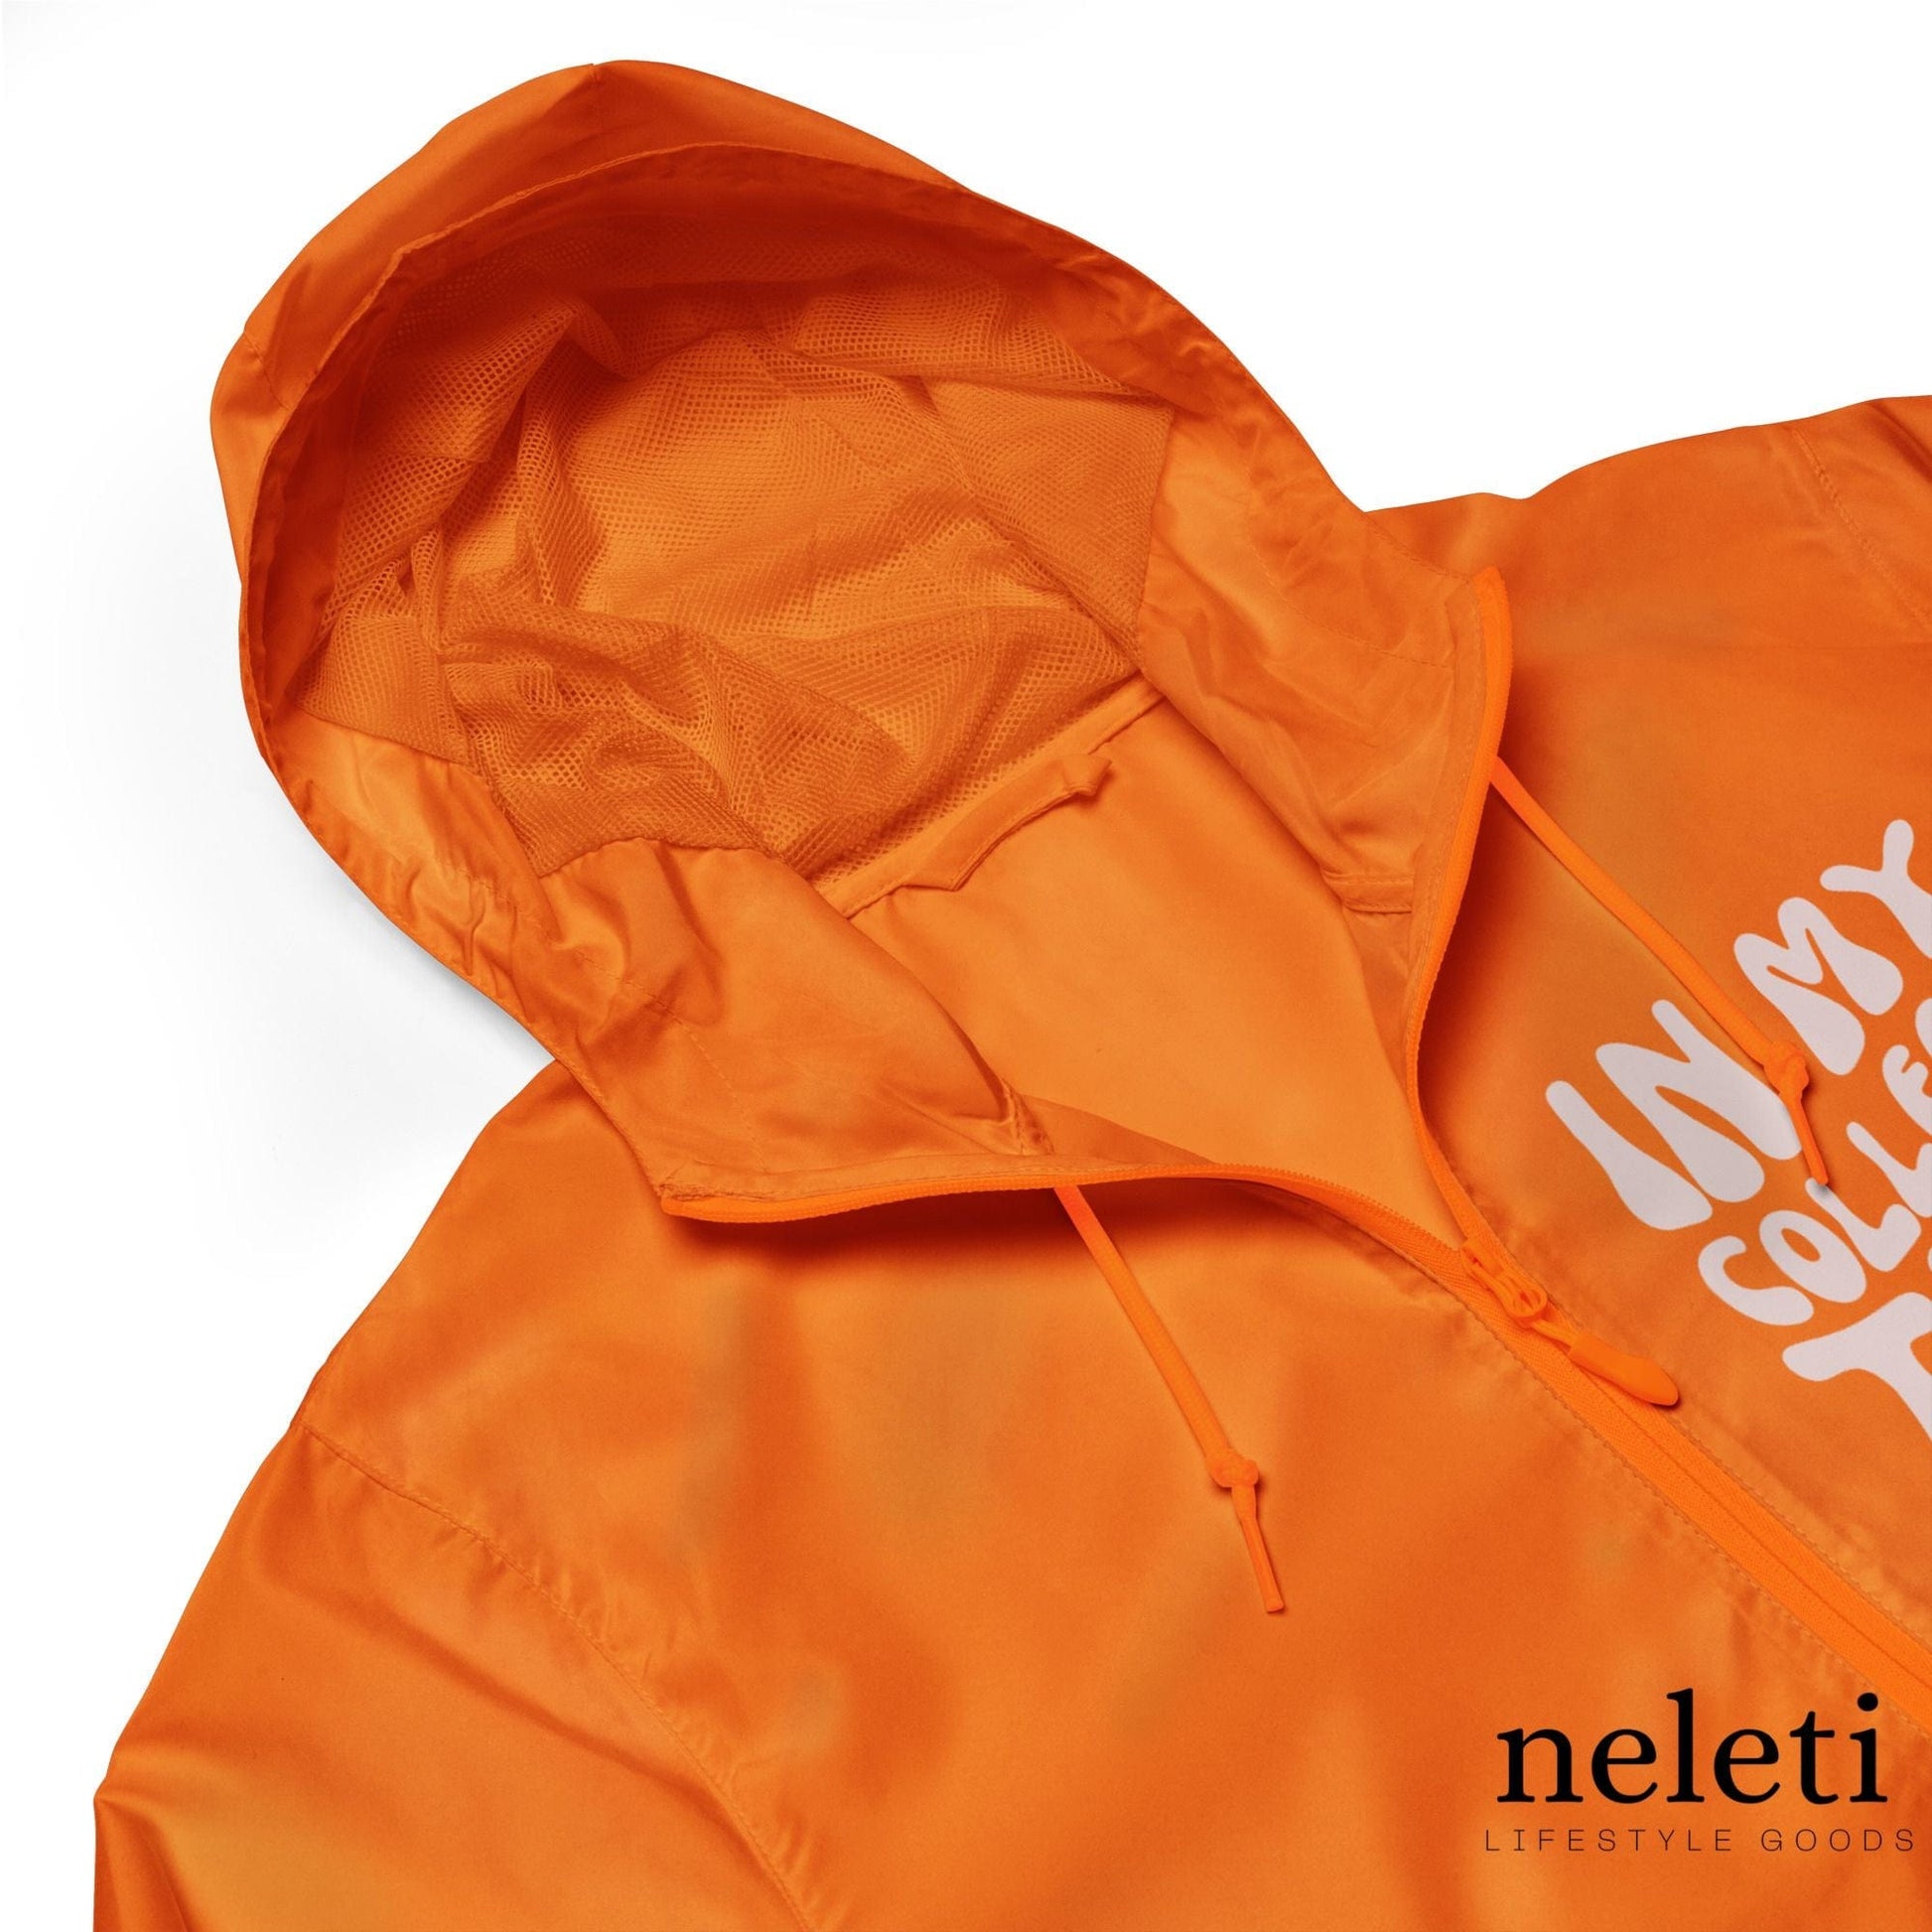 neleti.com-men-windbreaker-in-orange-color